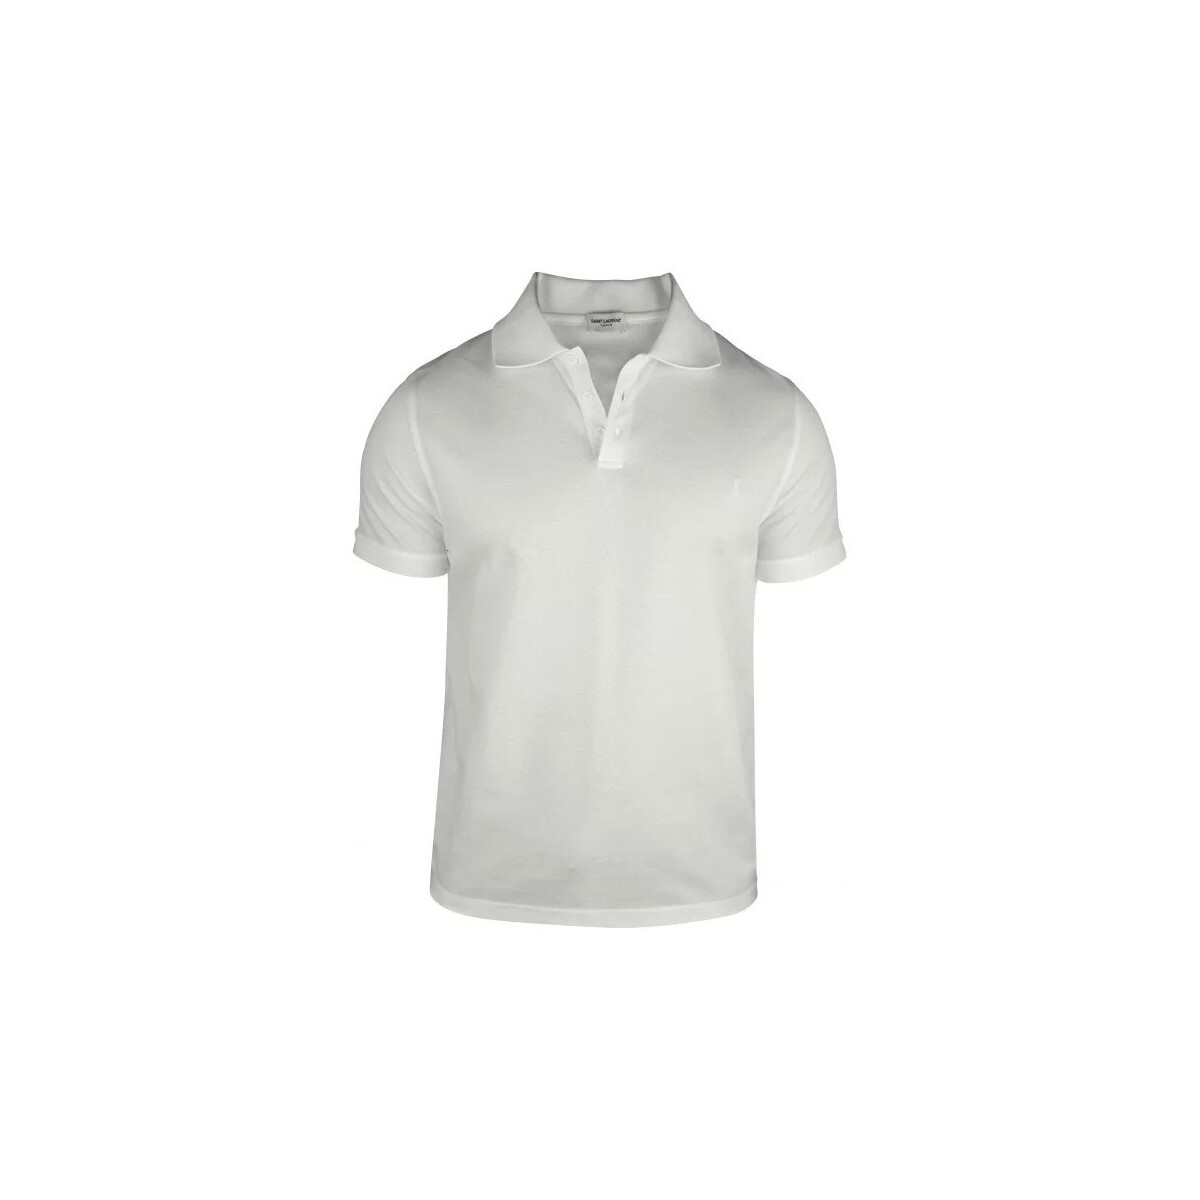 textil Hombre Tops y Camisetas Saint Laurent  Blanco